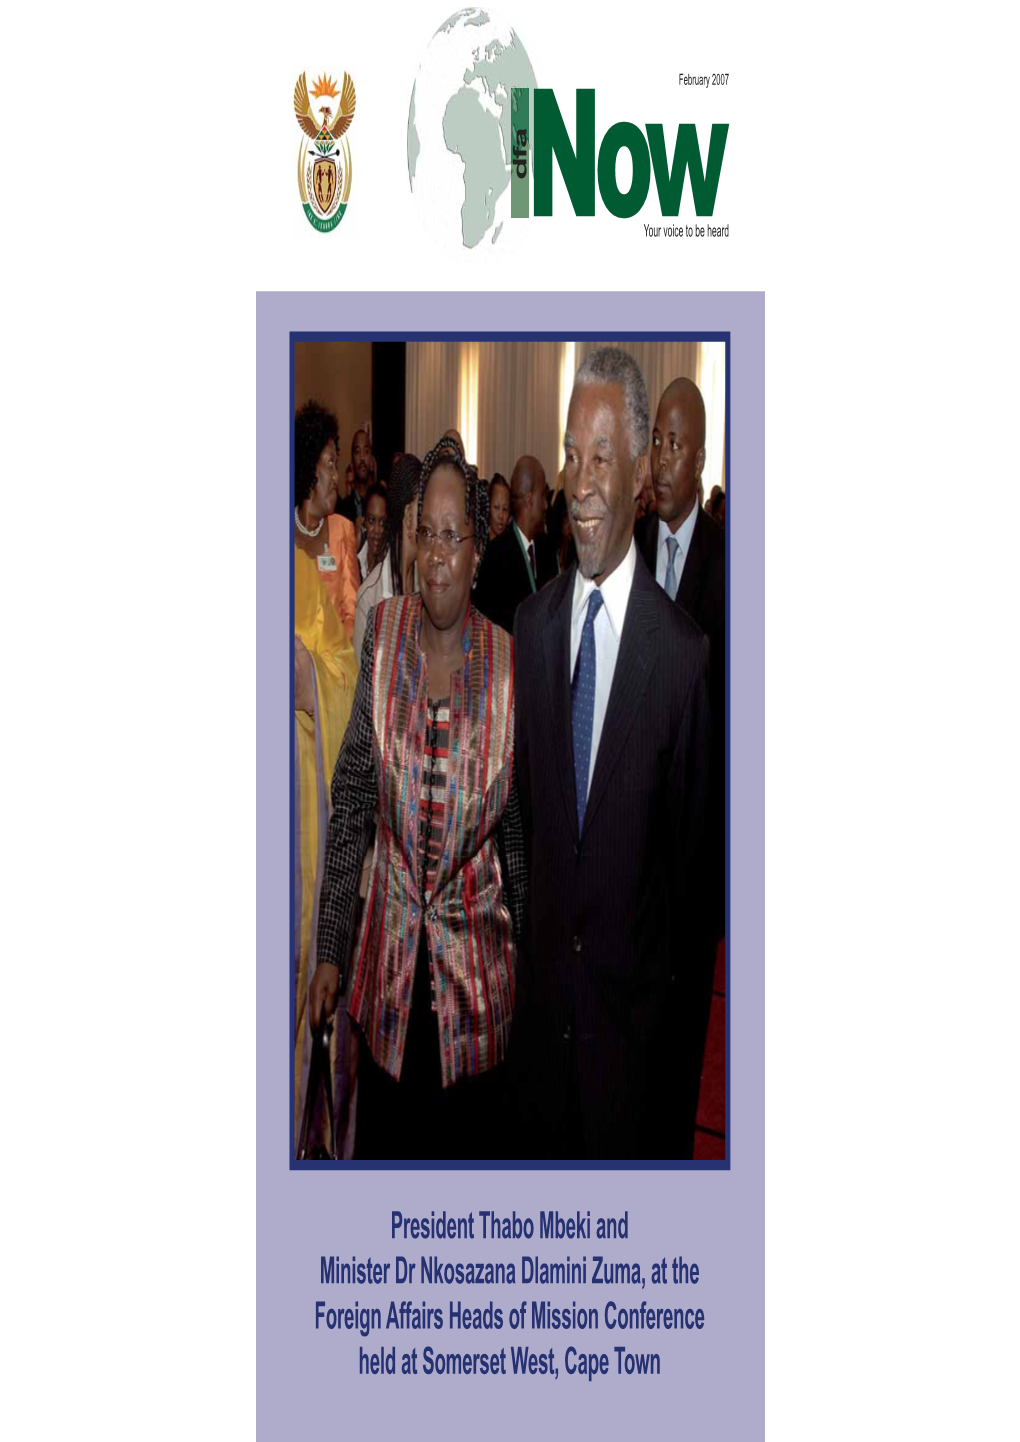 Dfa President Thabo Mbeki and Minister Dr Nkosazana Dlamini